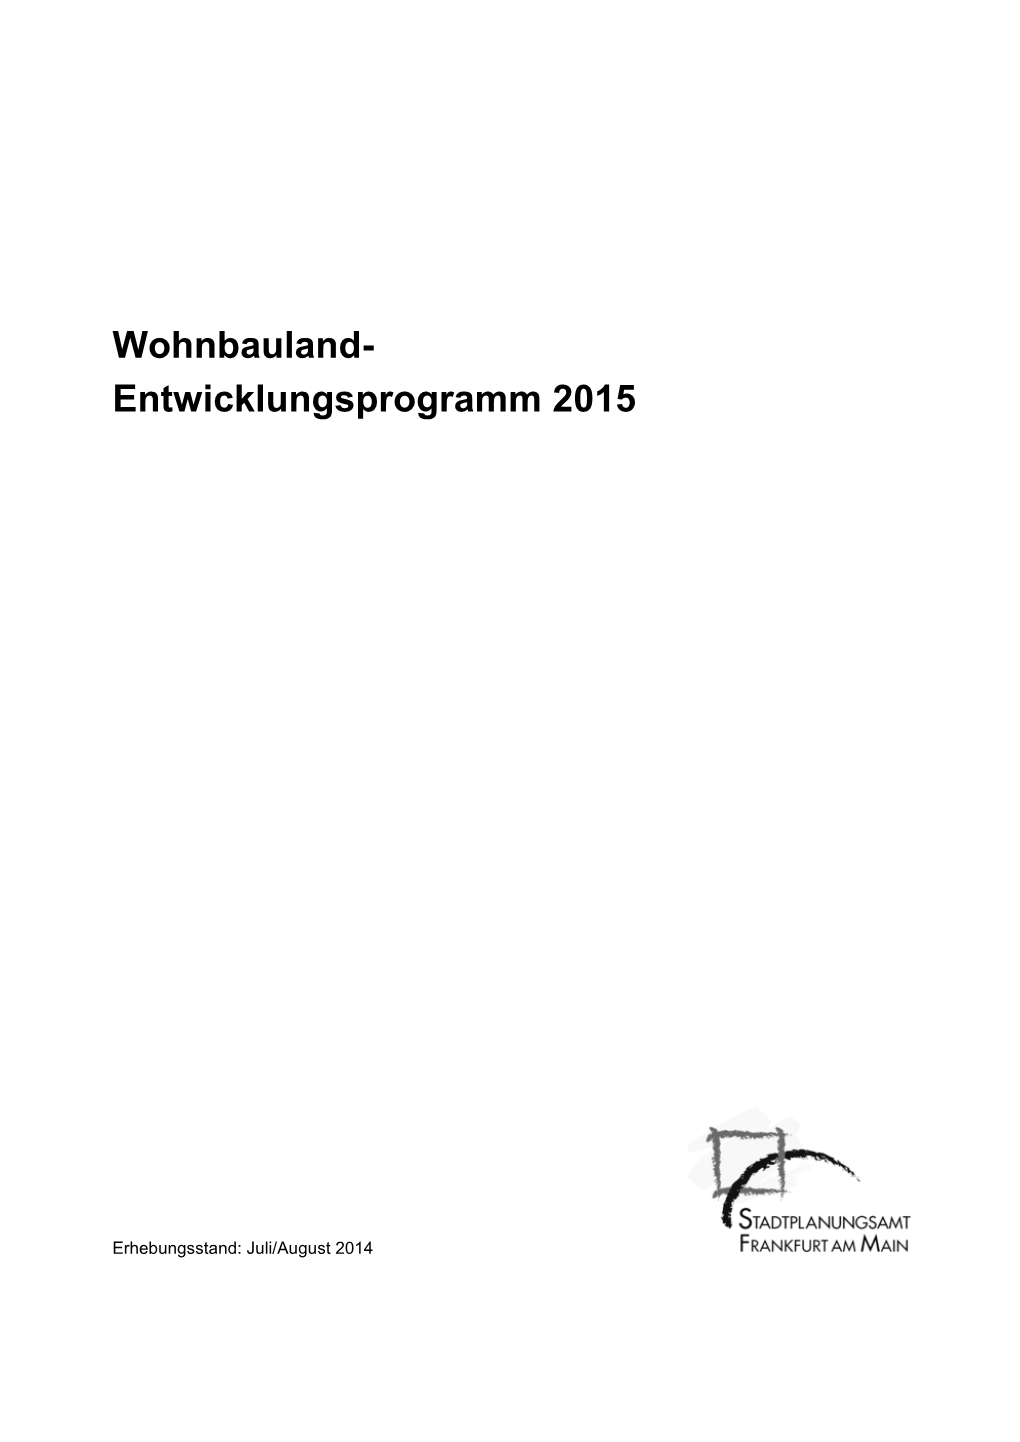 Wohnbauland- Entwicklungsprogramm 2015